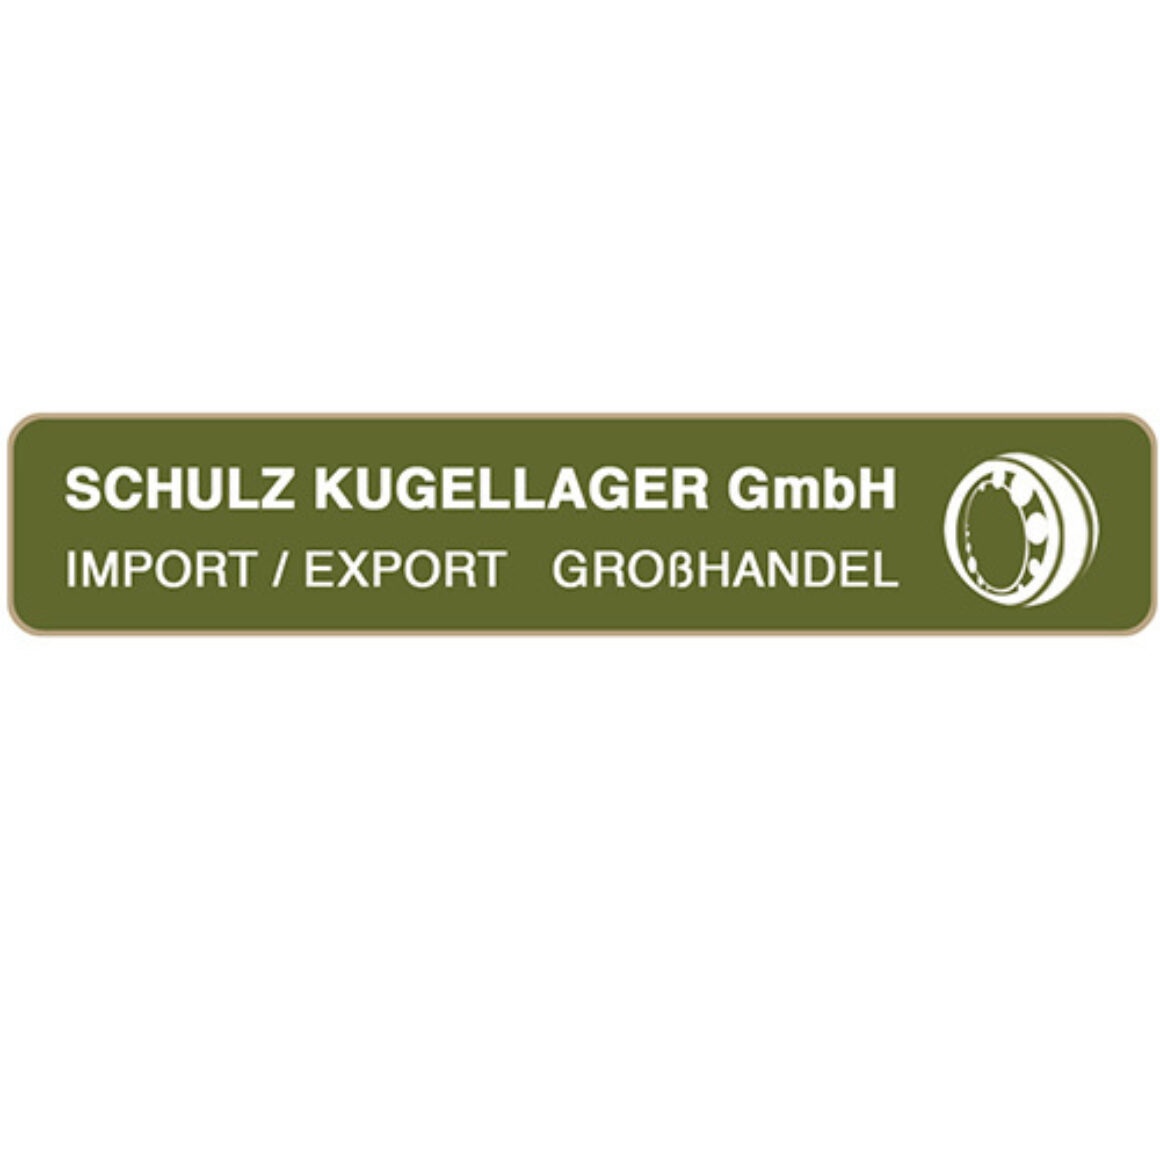 Schulz Kugellager GmbH